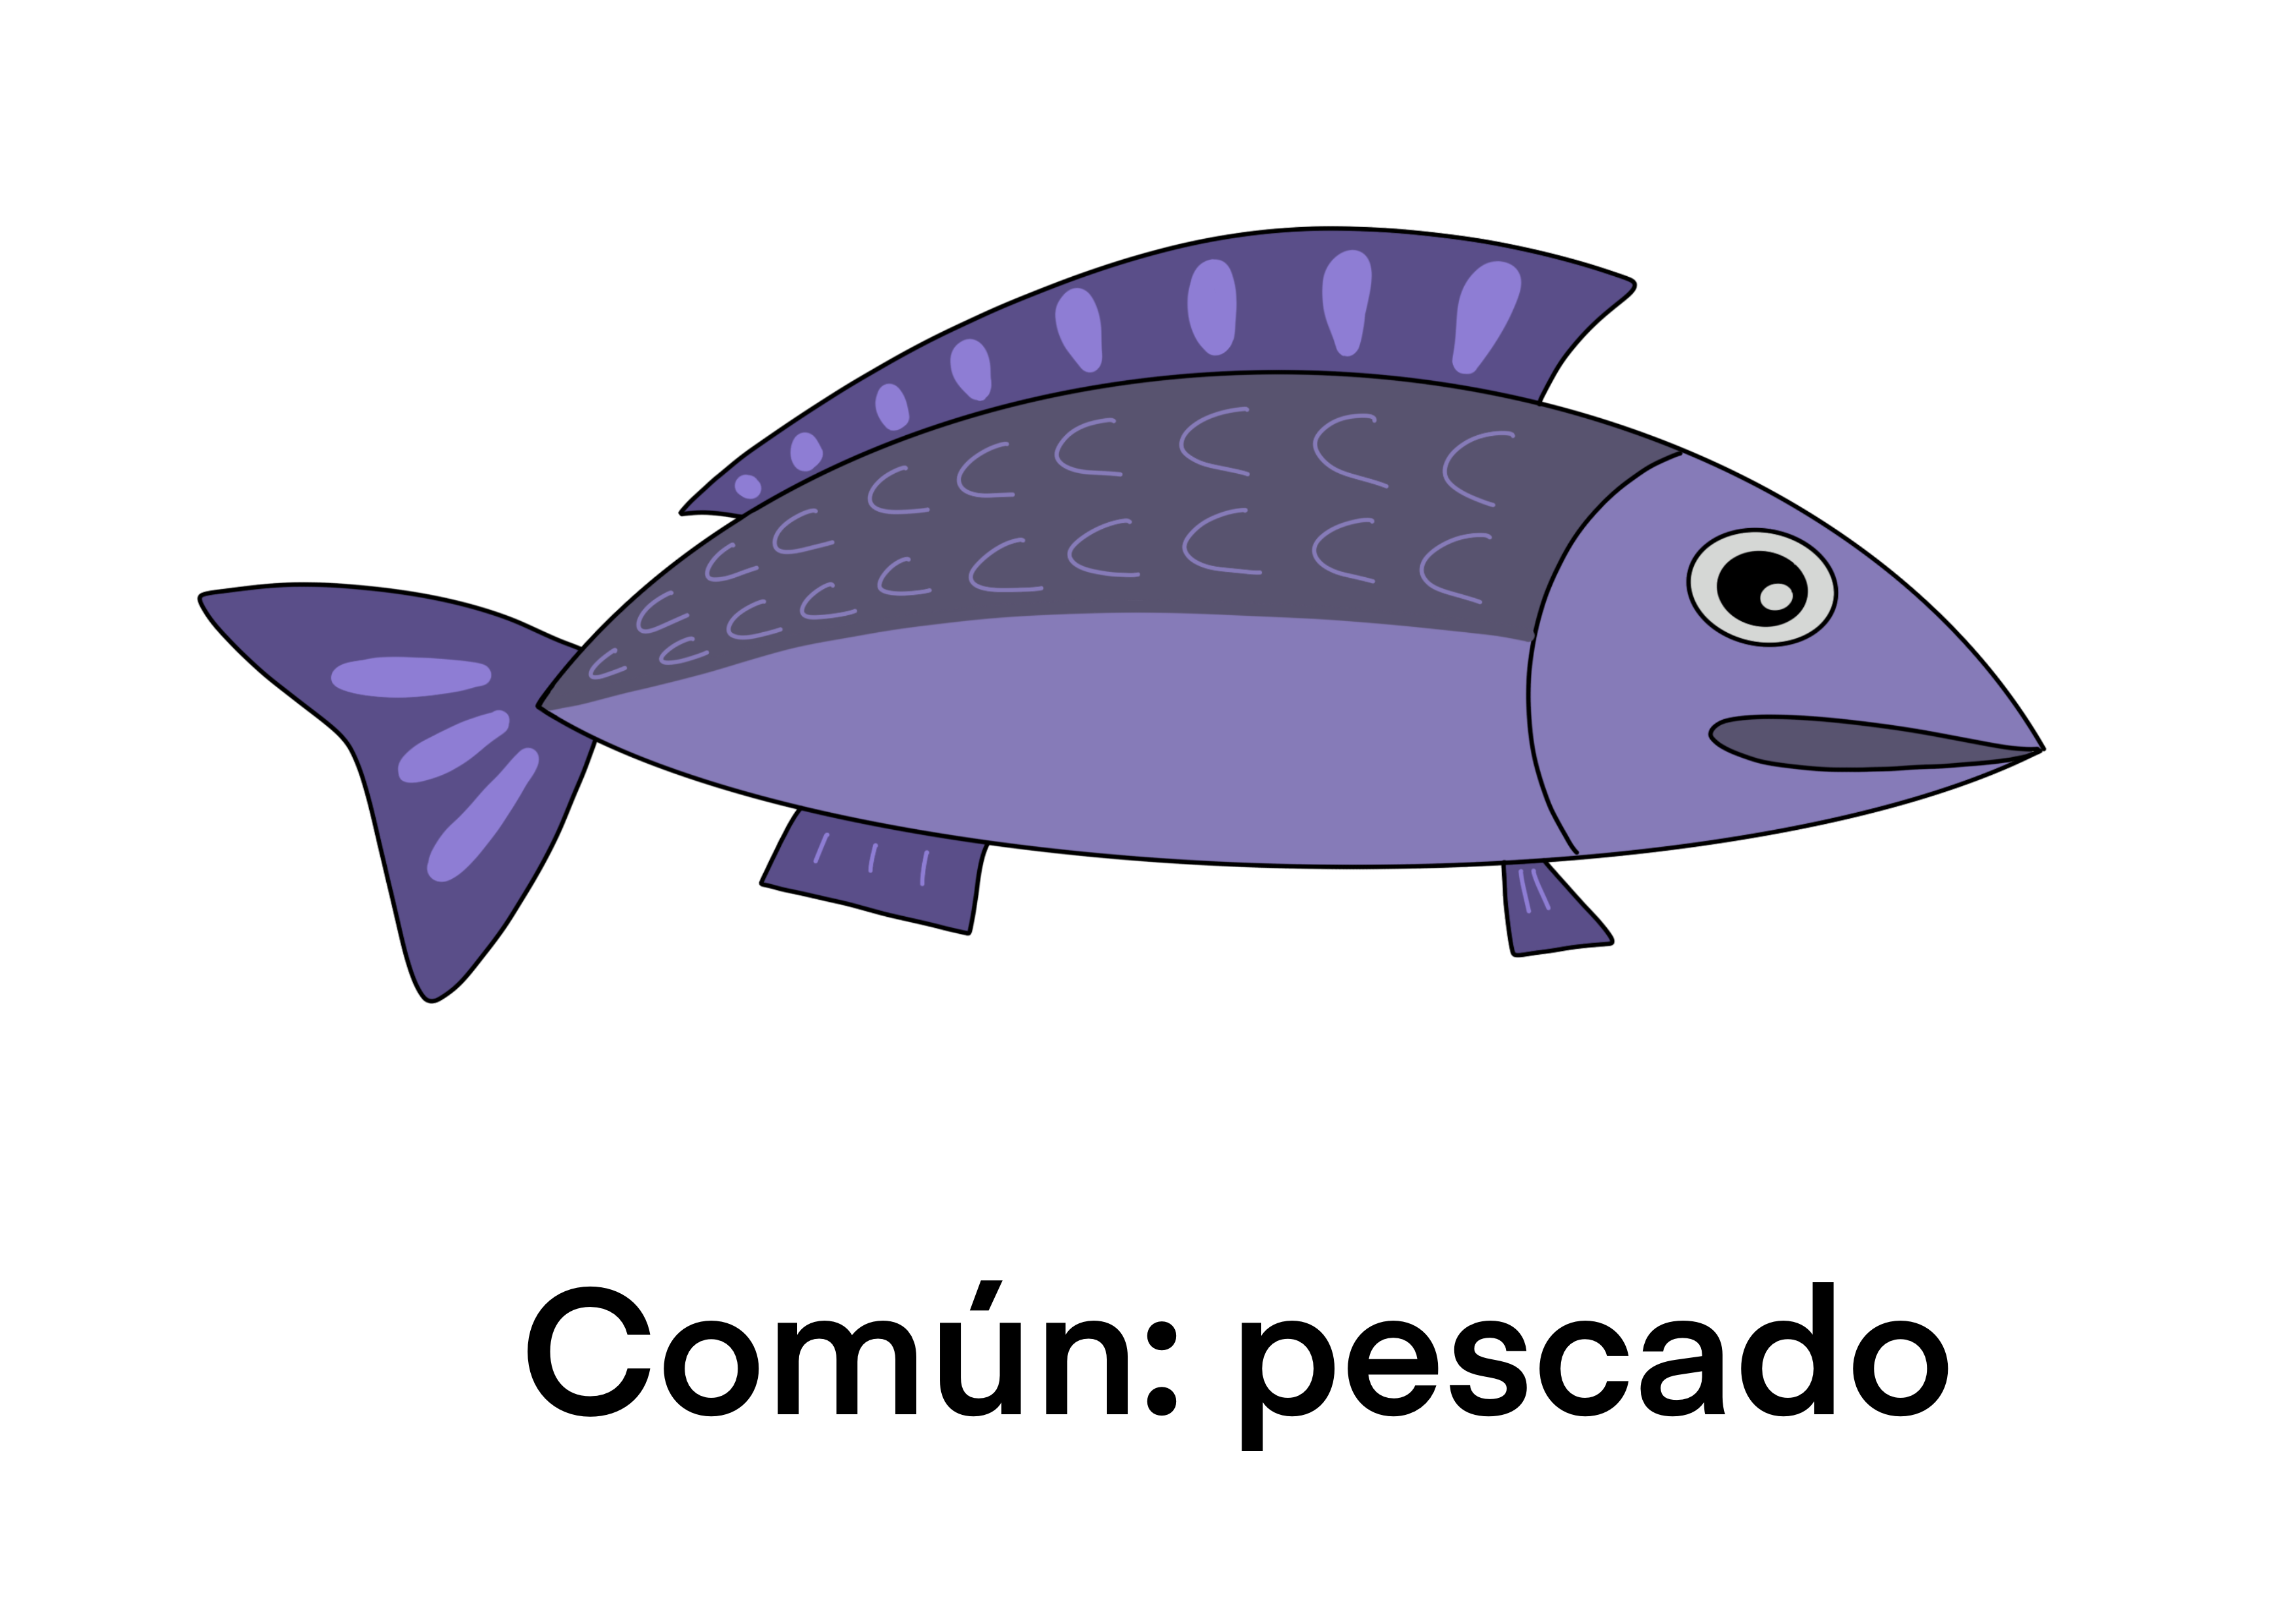 pescado: común